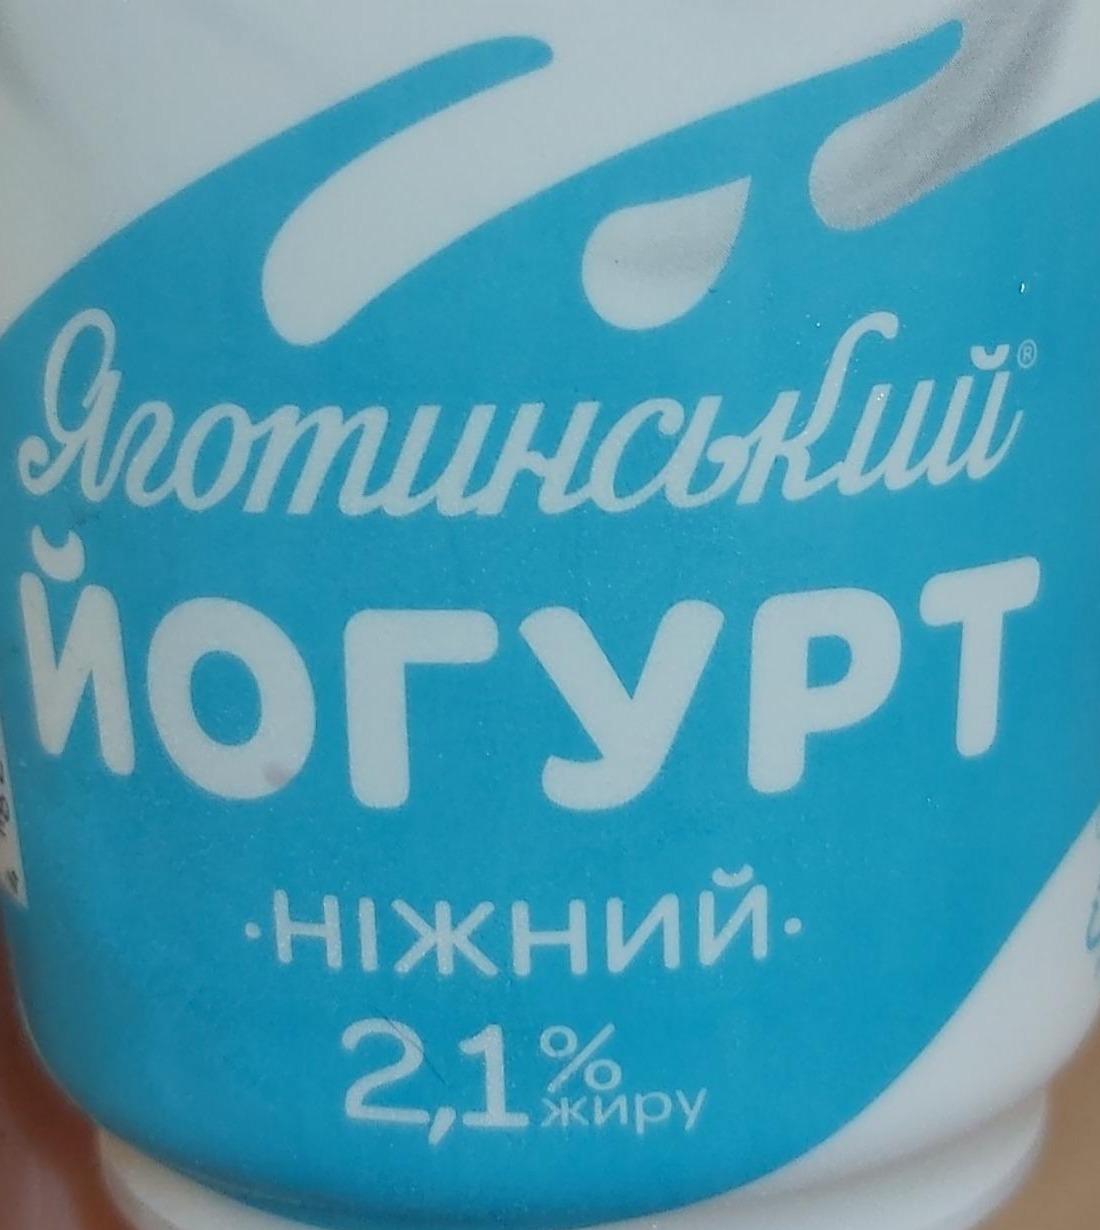 Фото - Йогурт 2.1% ніжний Яготинський